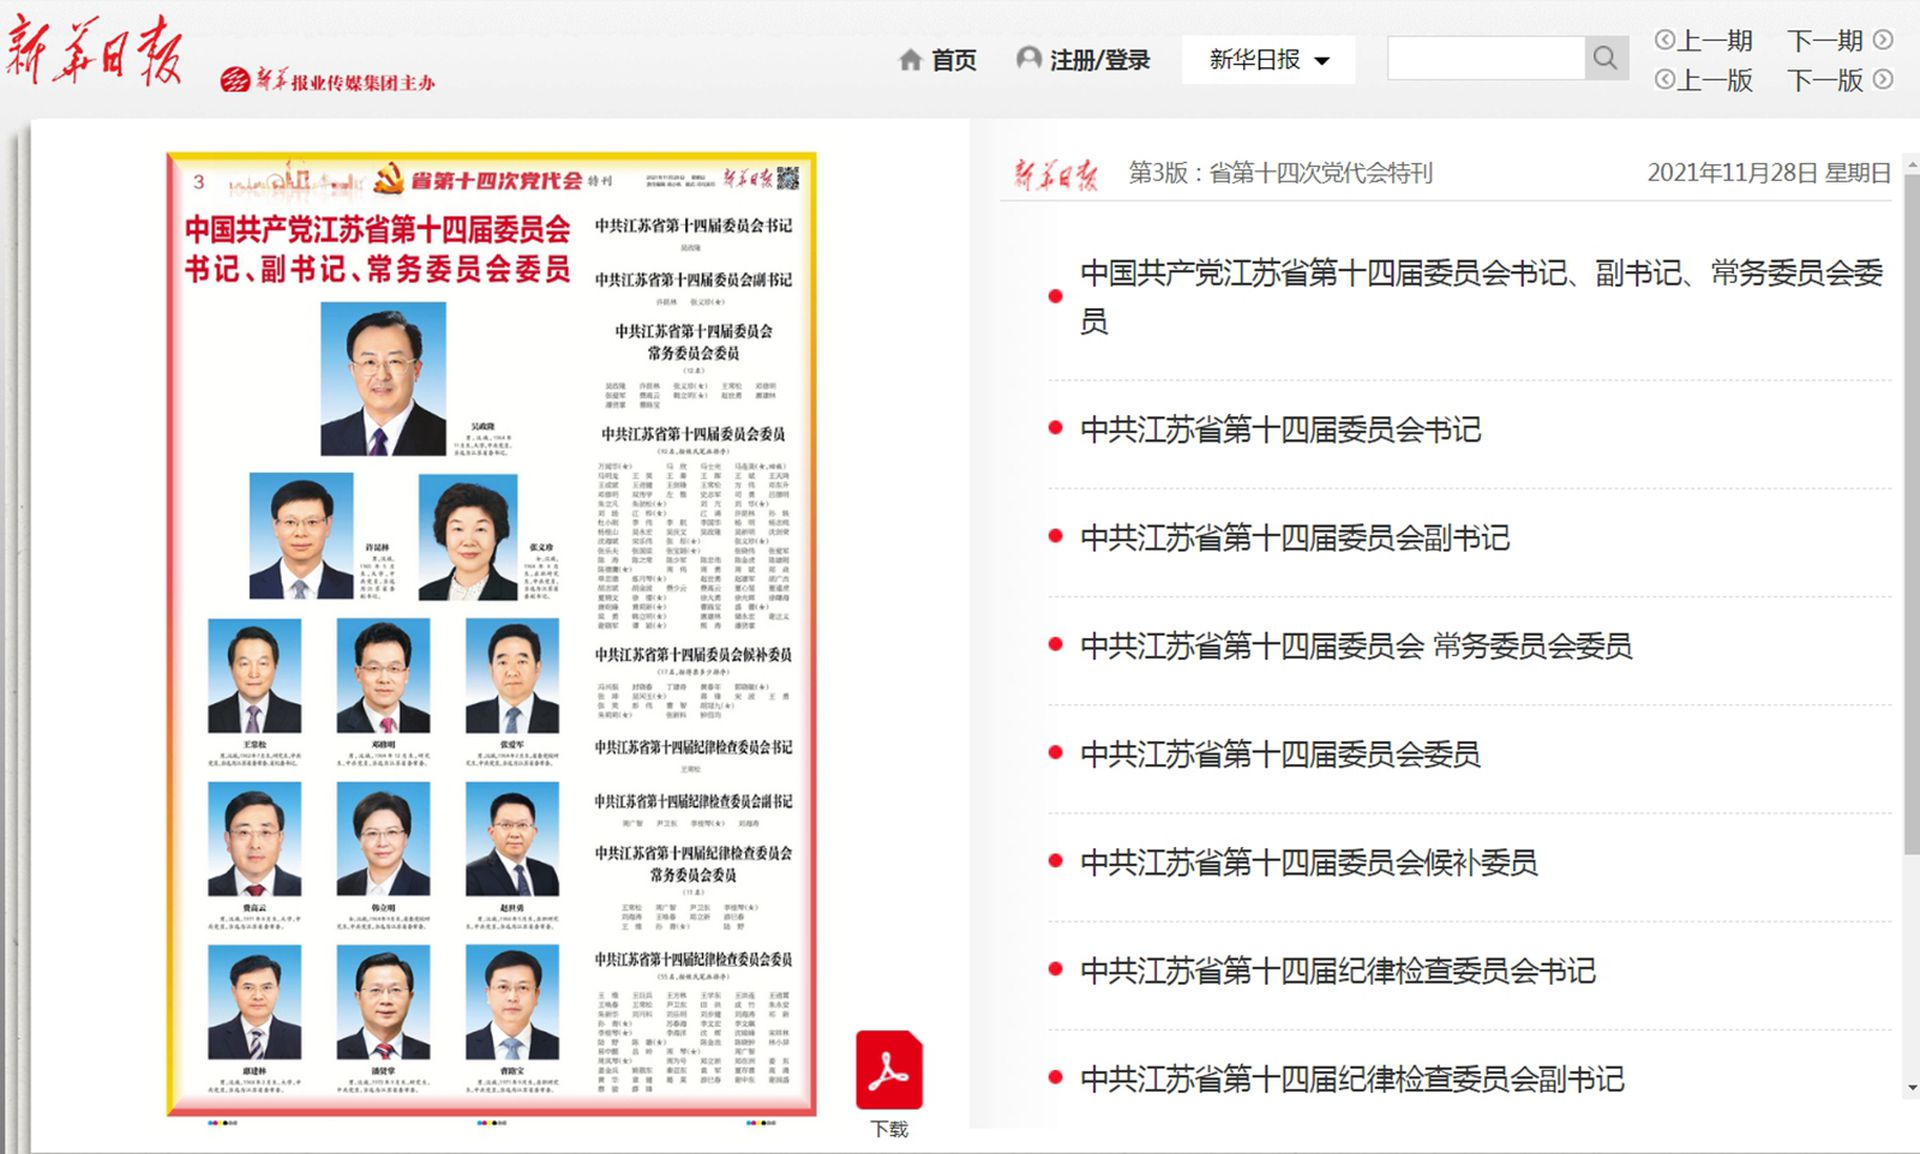 2021年11月28日，《新华日报》刊登中国共产党江苏省第十四届委员会书记、副书记、常务委员会委员简历。（新华日报截图）